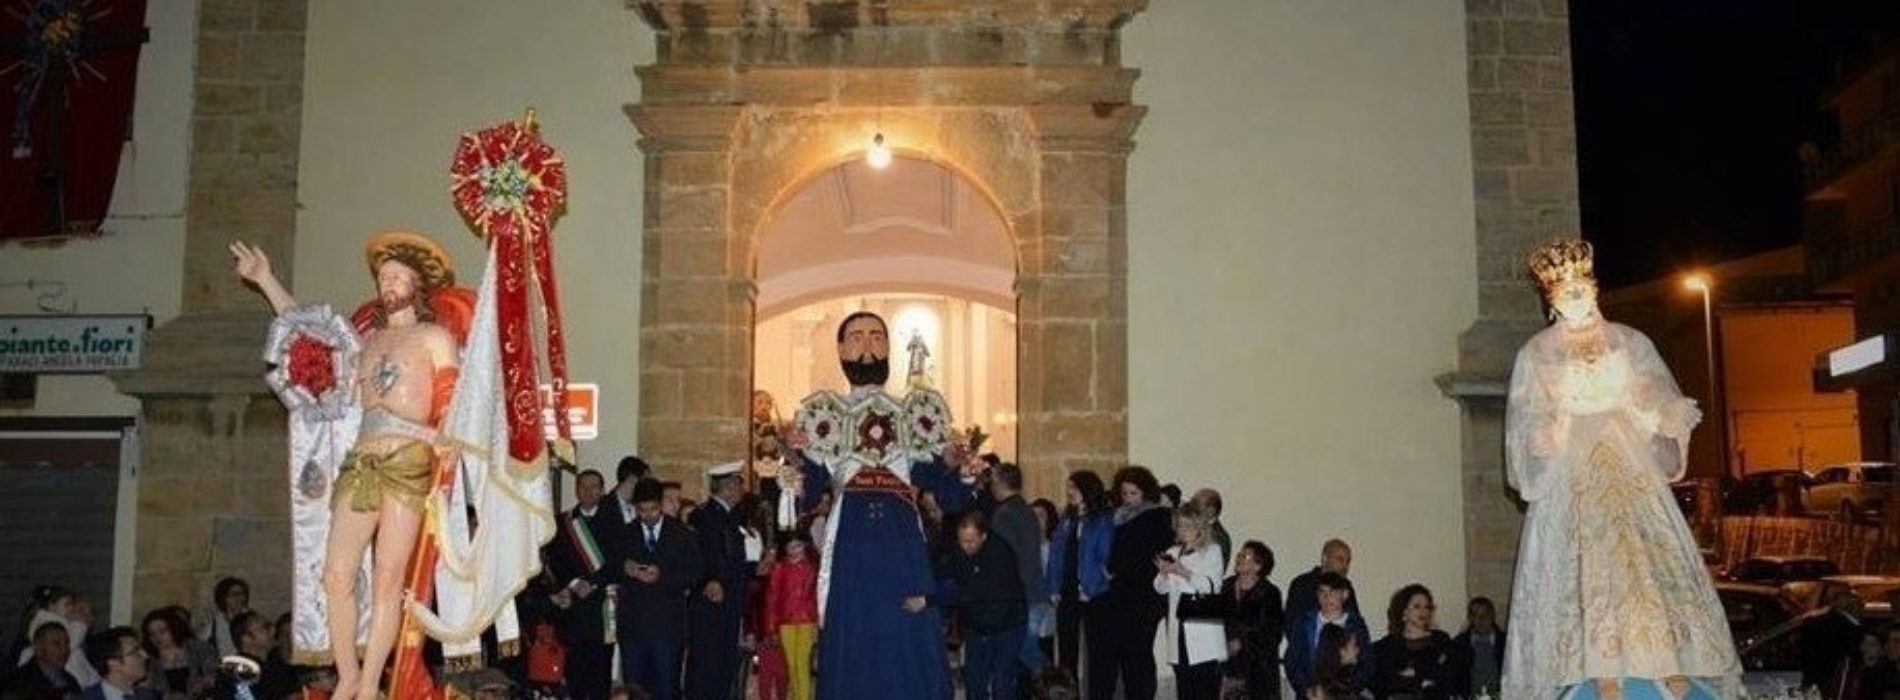 Partecipata la processione de “A Giunta”. Il Cristo Risorto ritorna dopo 19 anni nella chiesa di San Francesco